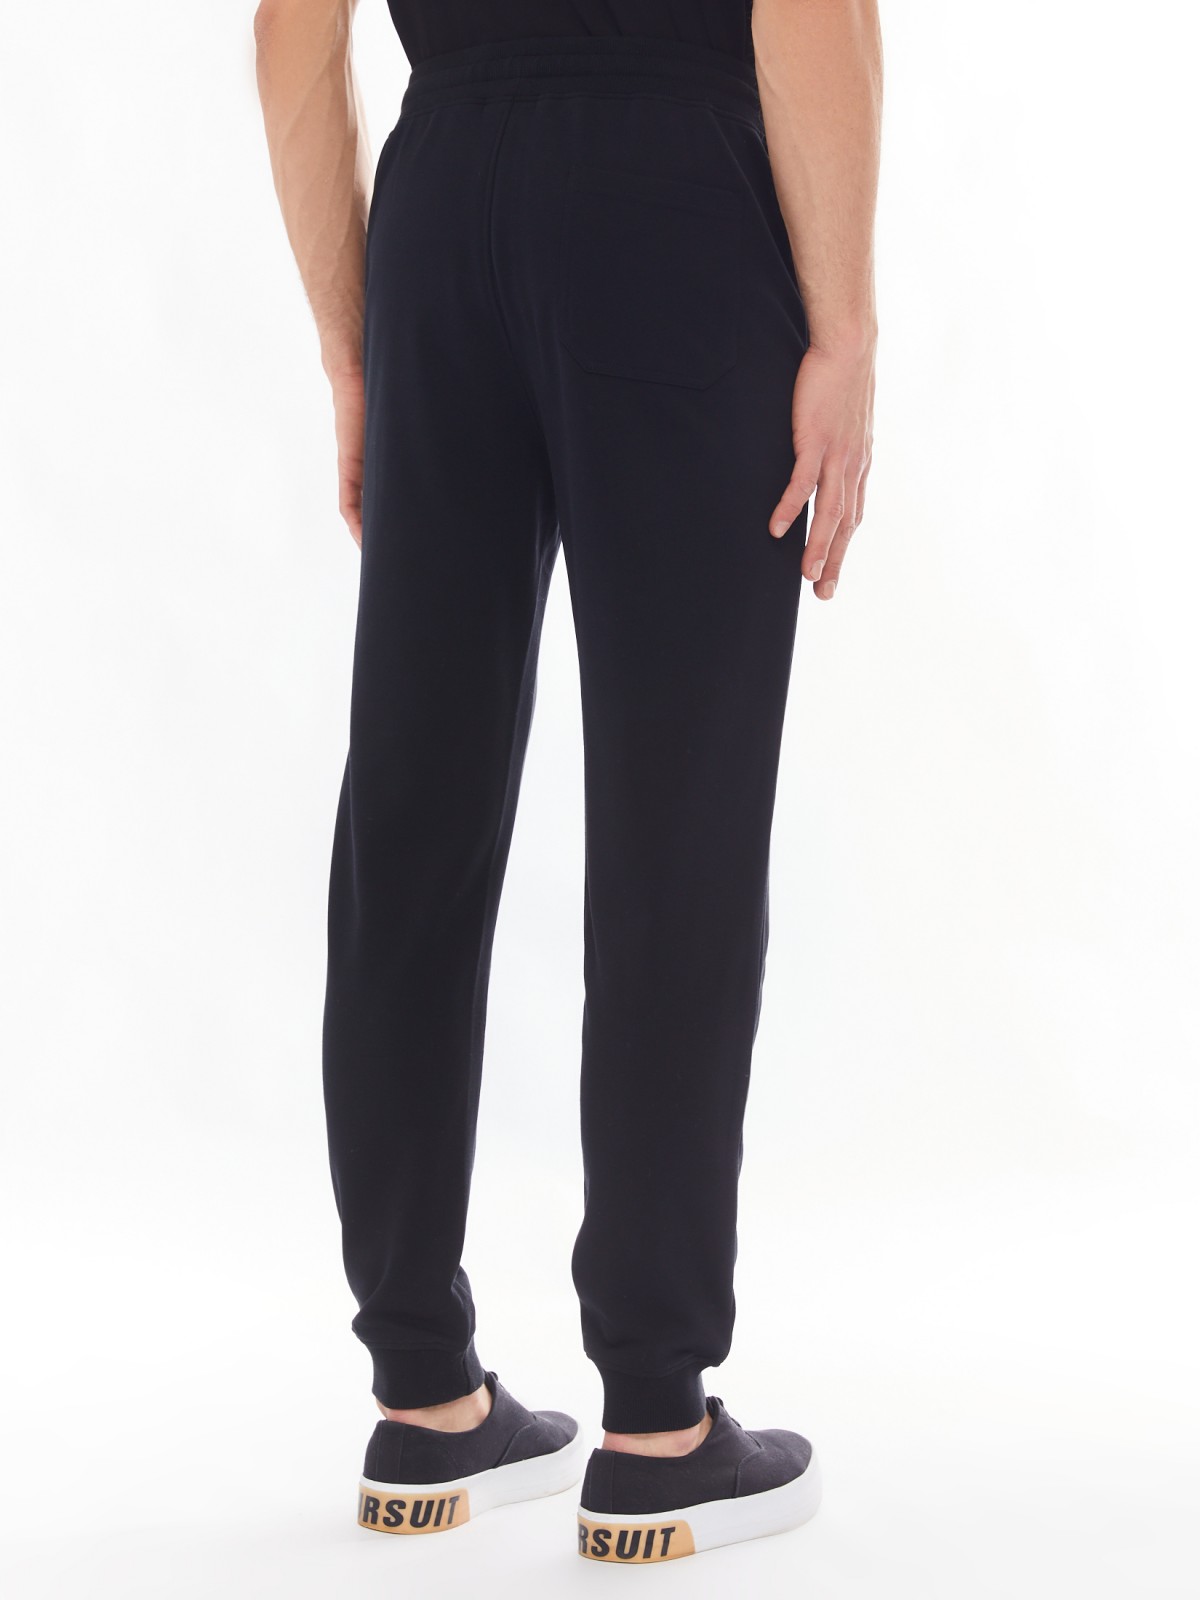 Трикотажные брюки-джоггеры в спортивном стиле zolla 014137675022, цвет черный, размер S - фото 5